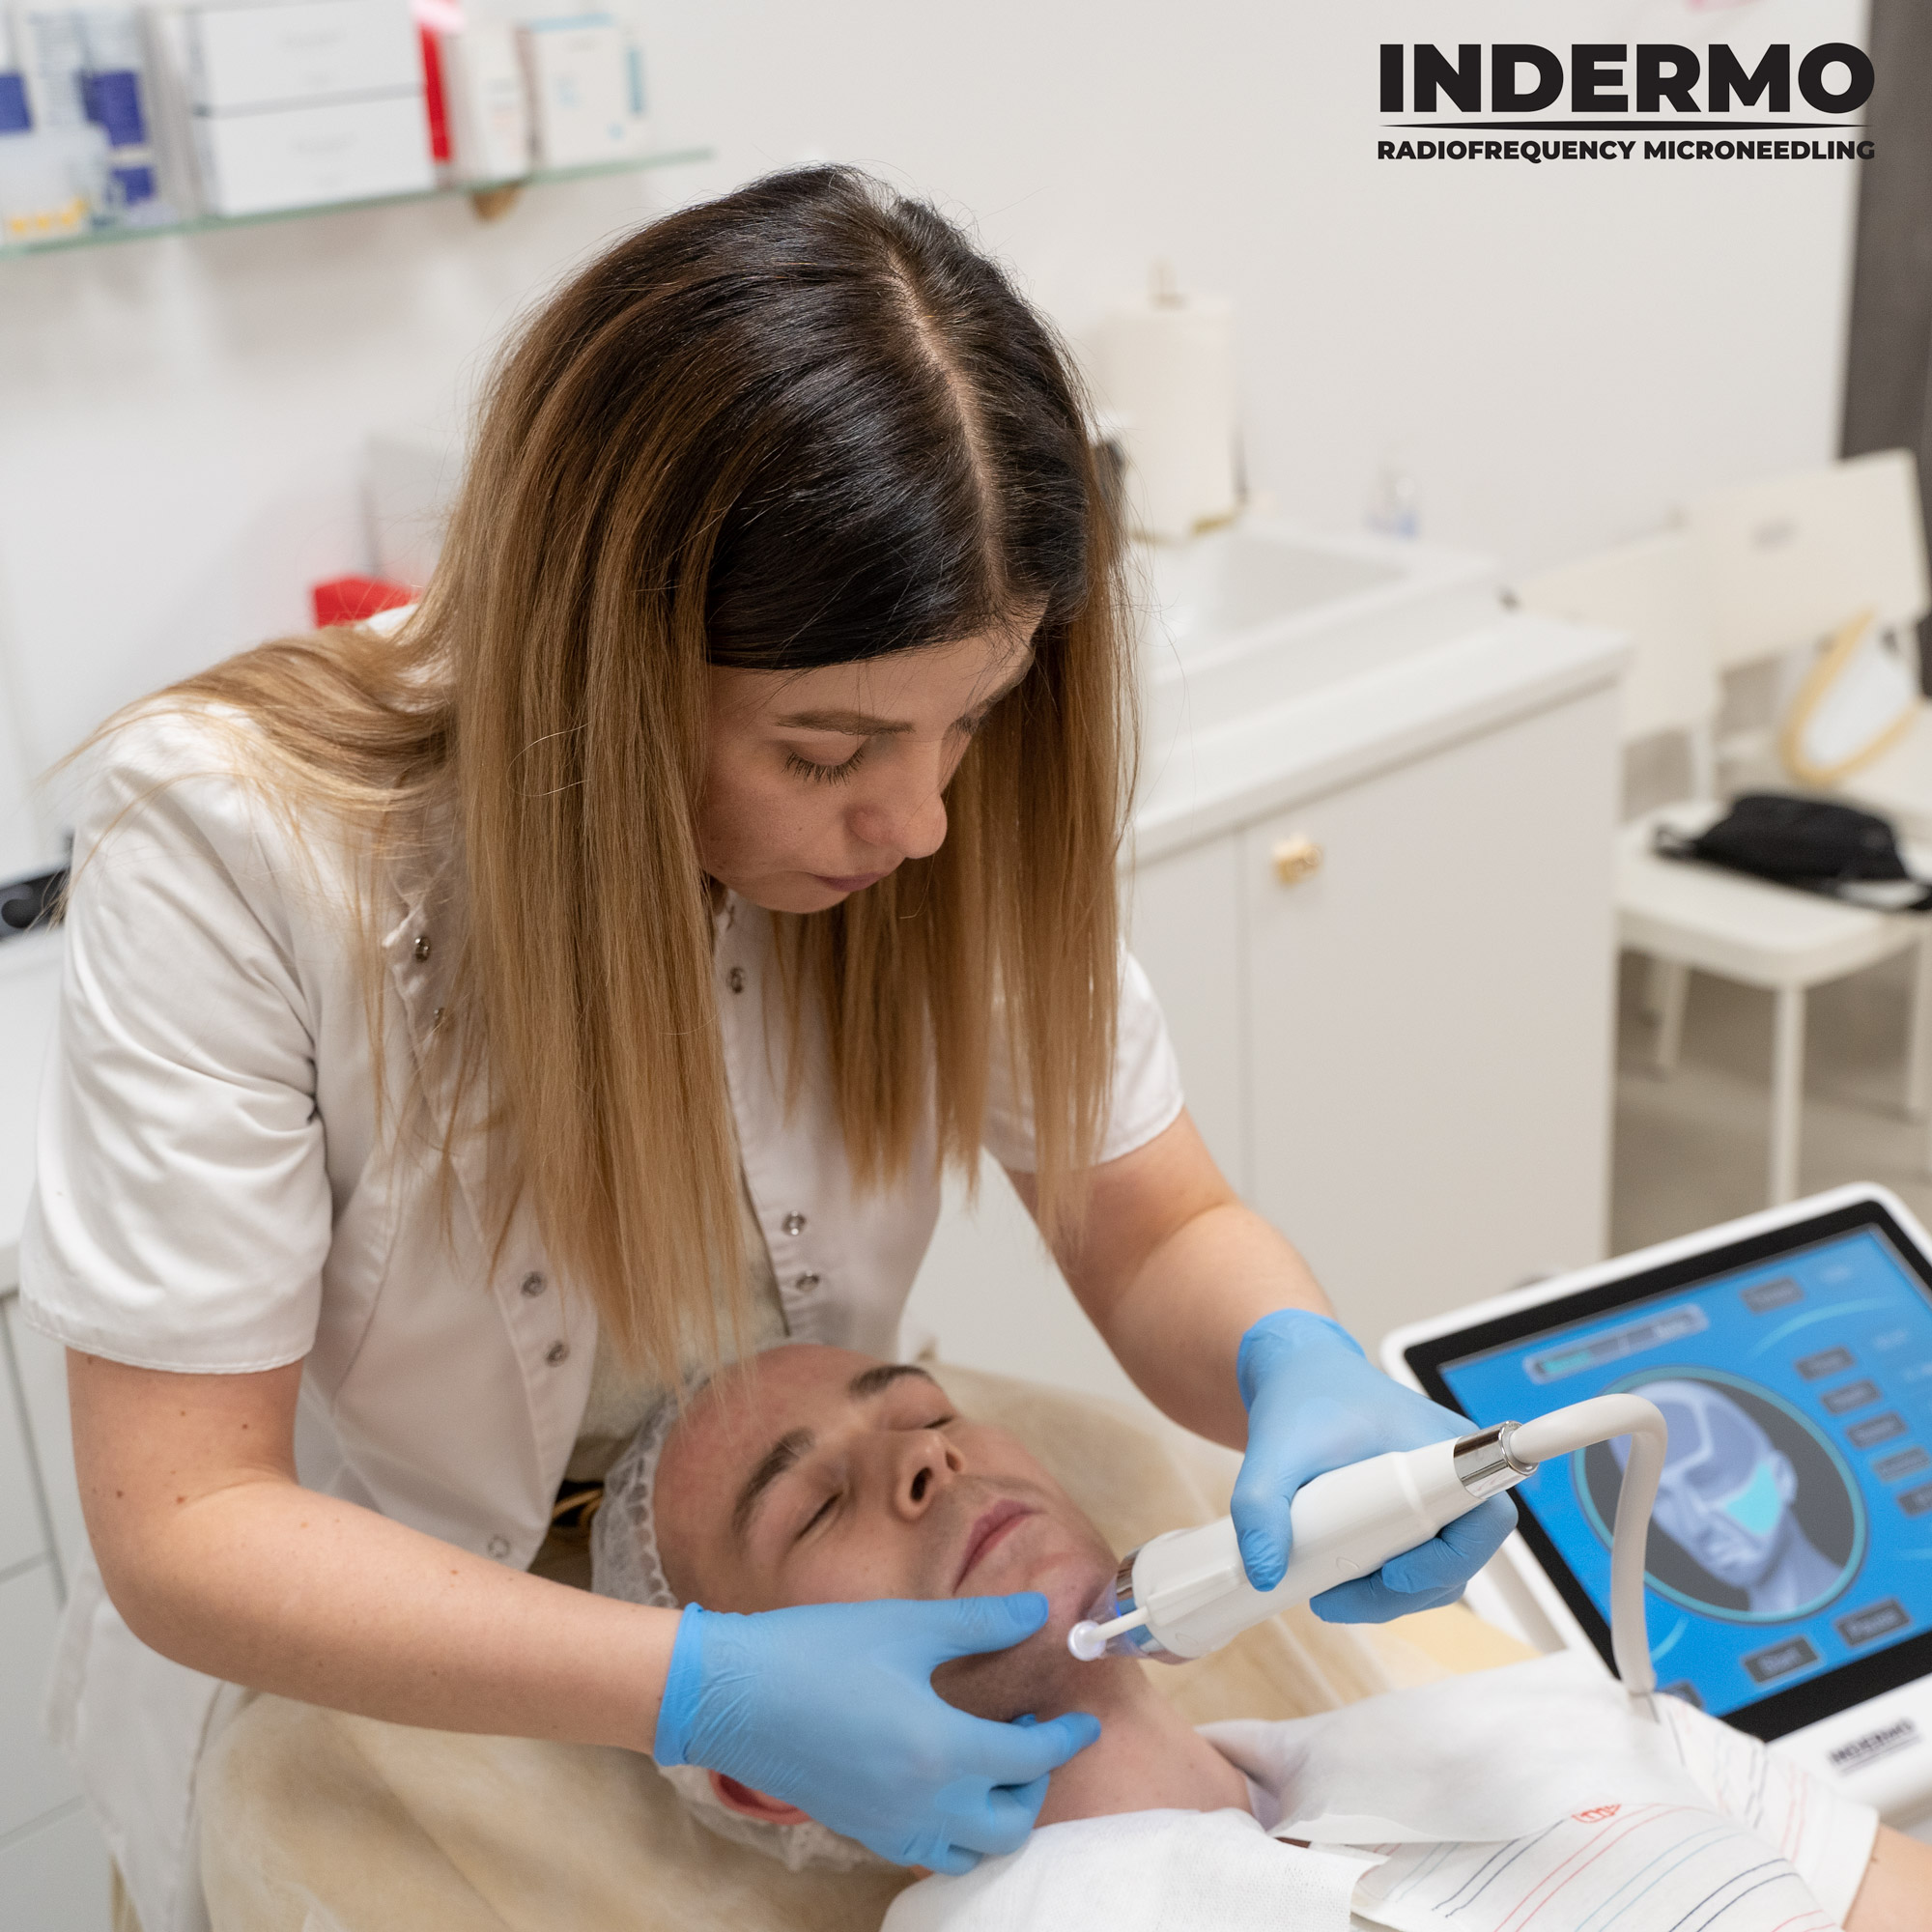 Oryginalna maszyna Indermo posiada aż 3 programy zasysania skóry, dzięki czemu zapewnia pełen komfort użytkowania